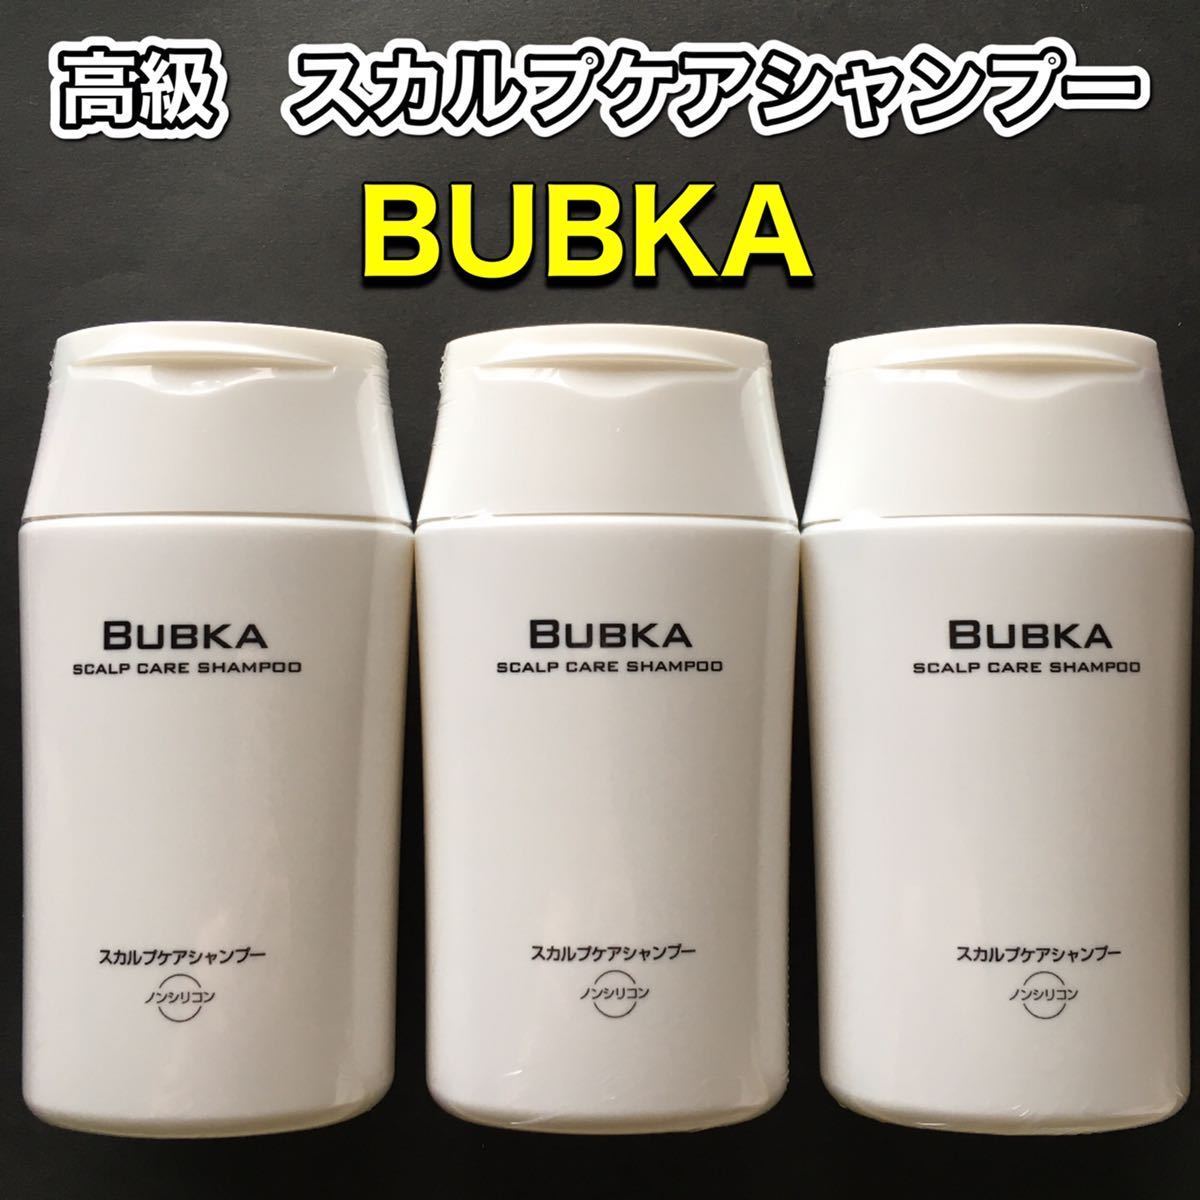 BUBKA ブブカ スカルプケアシャンプー 200ml BUBKAZERO - lcdqla.com